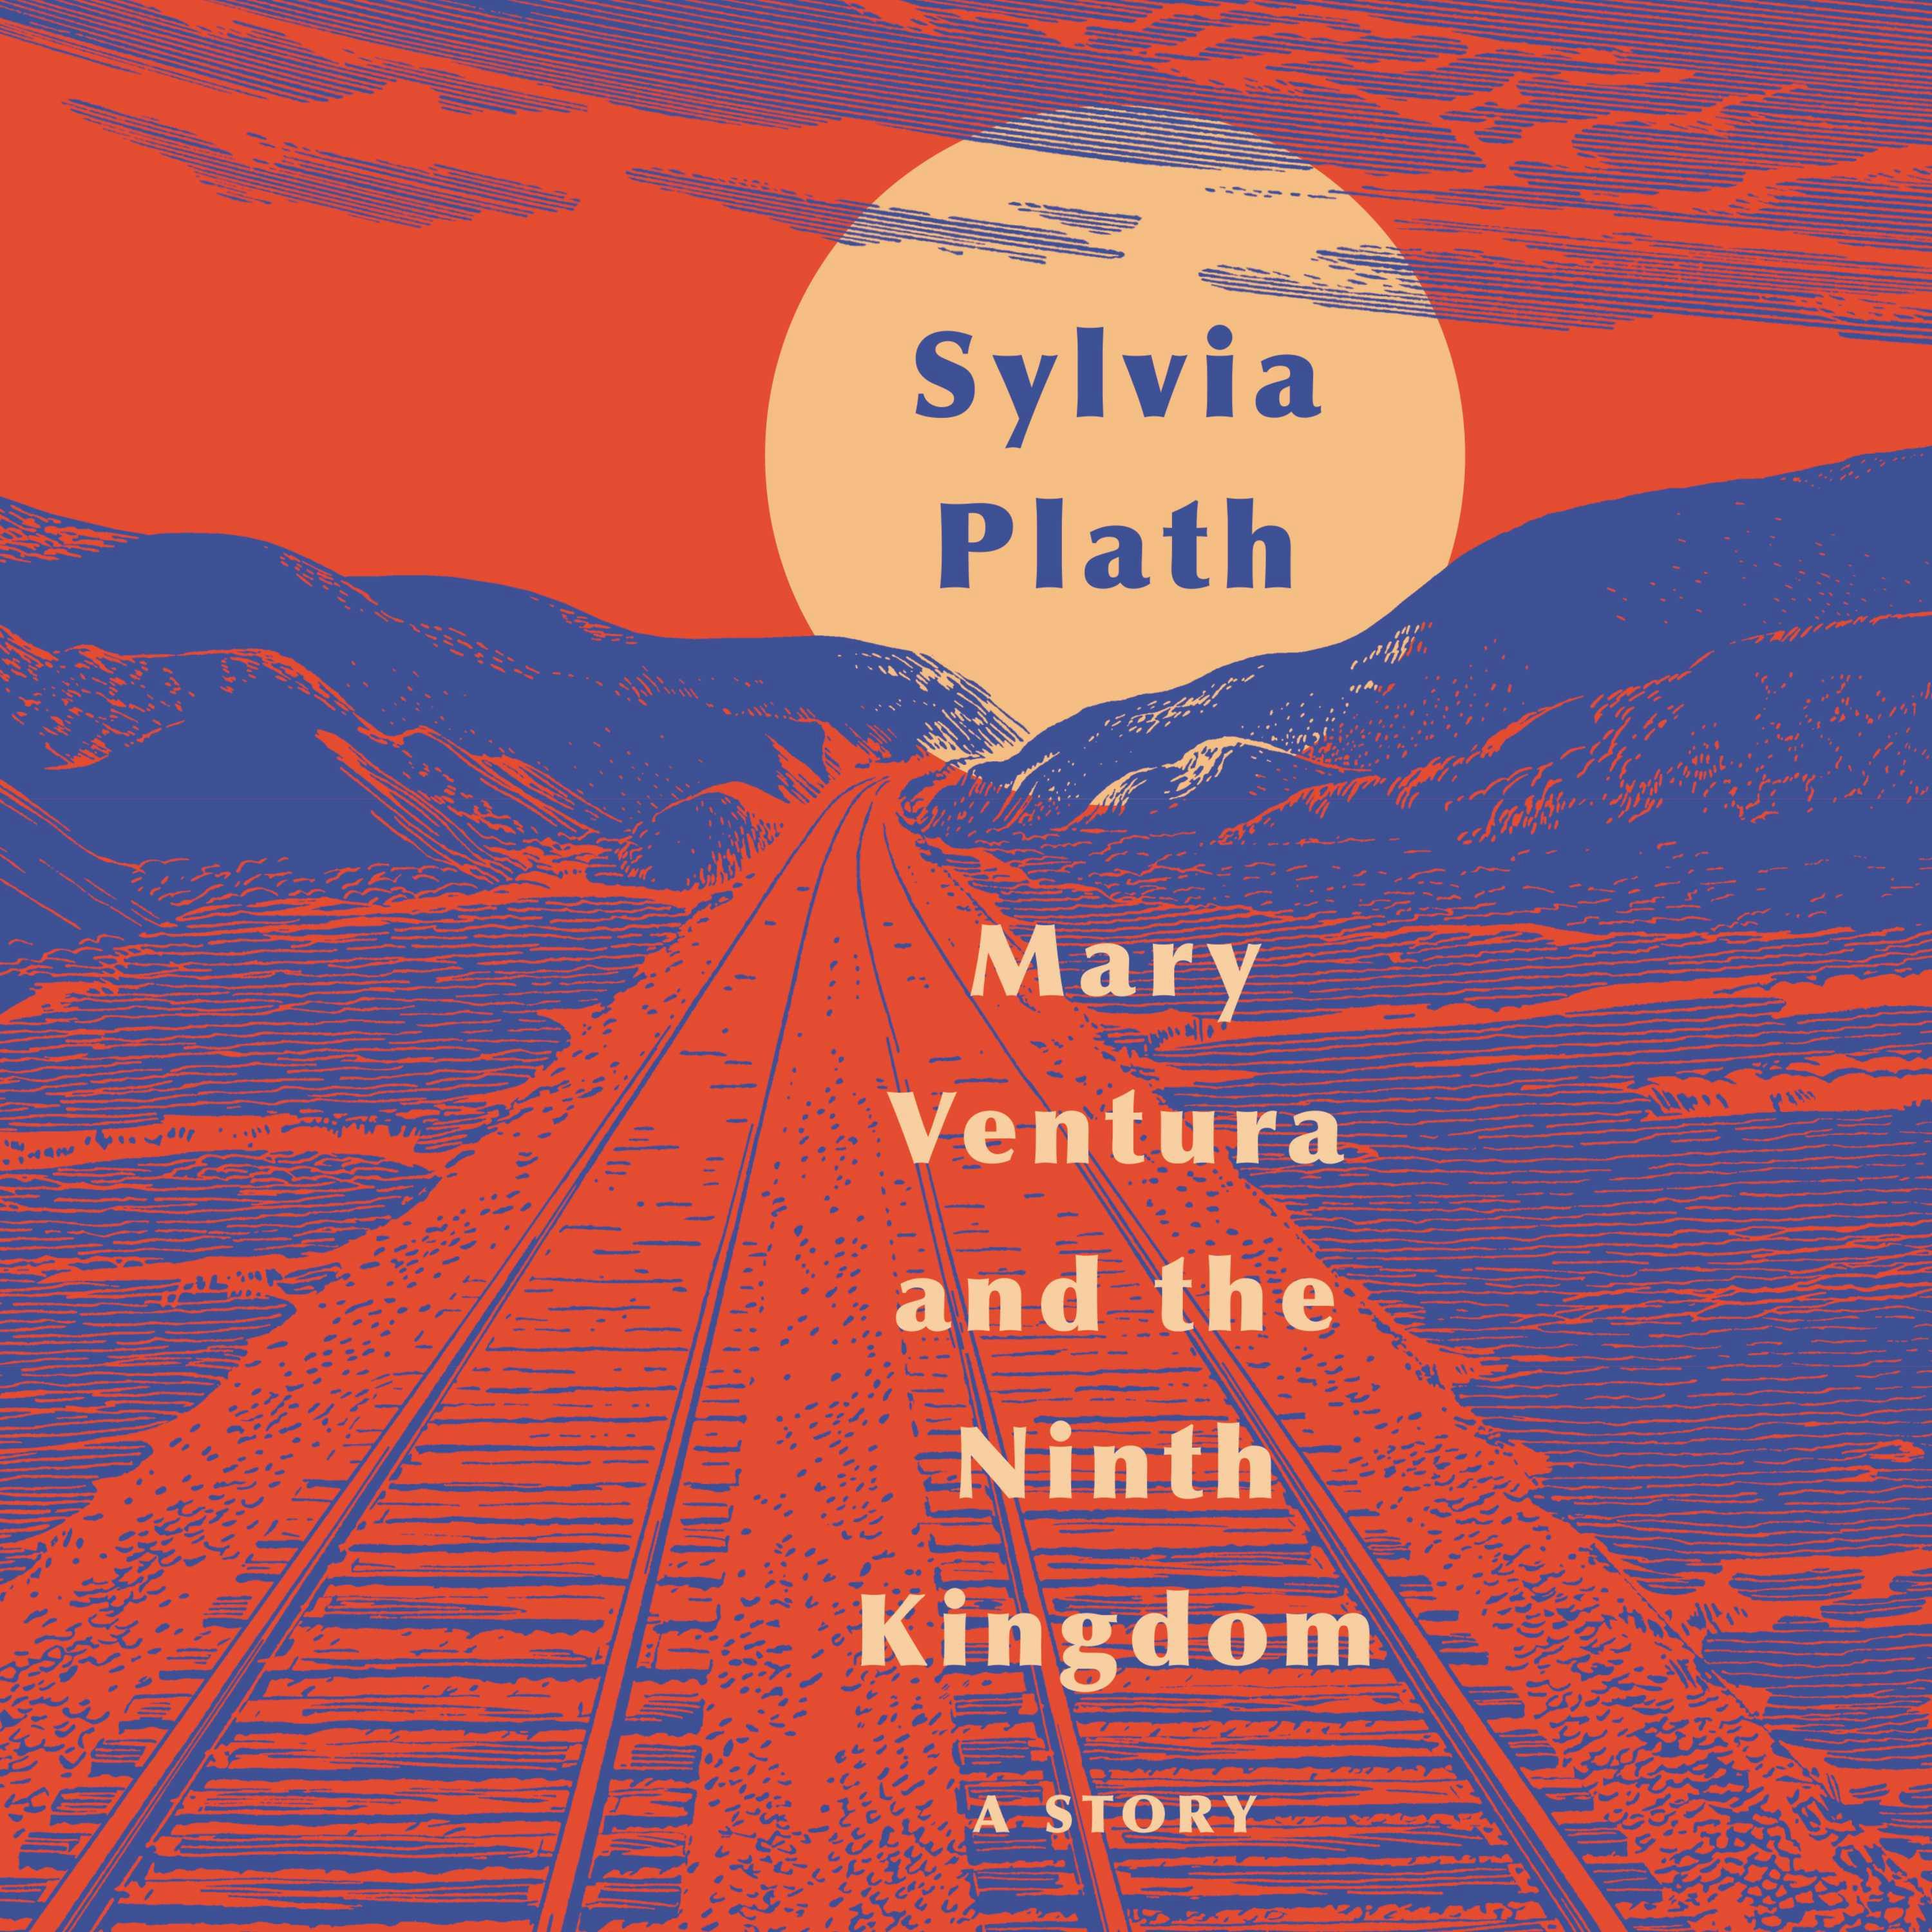 Mary Ventura and The Ninth Kingdom: A Story - Sylvia Plath